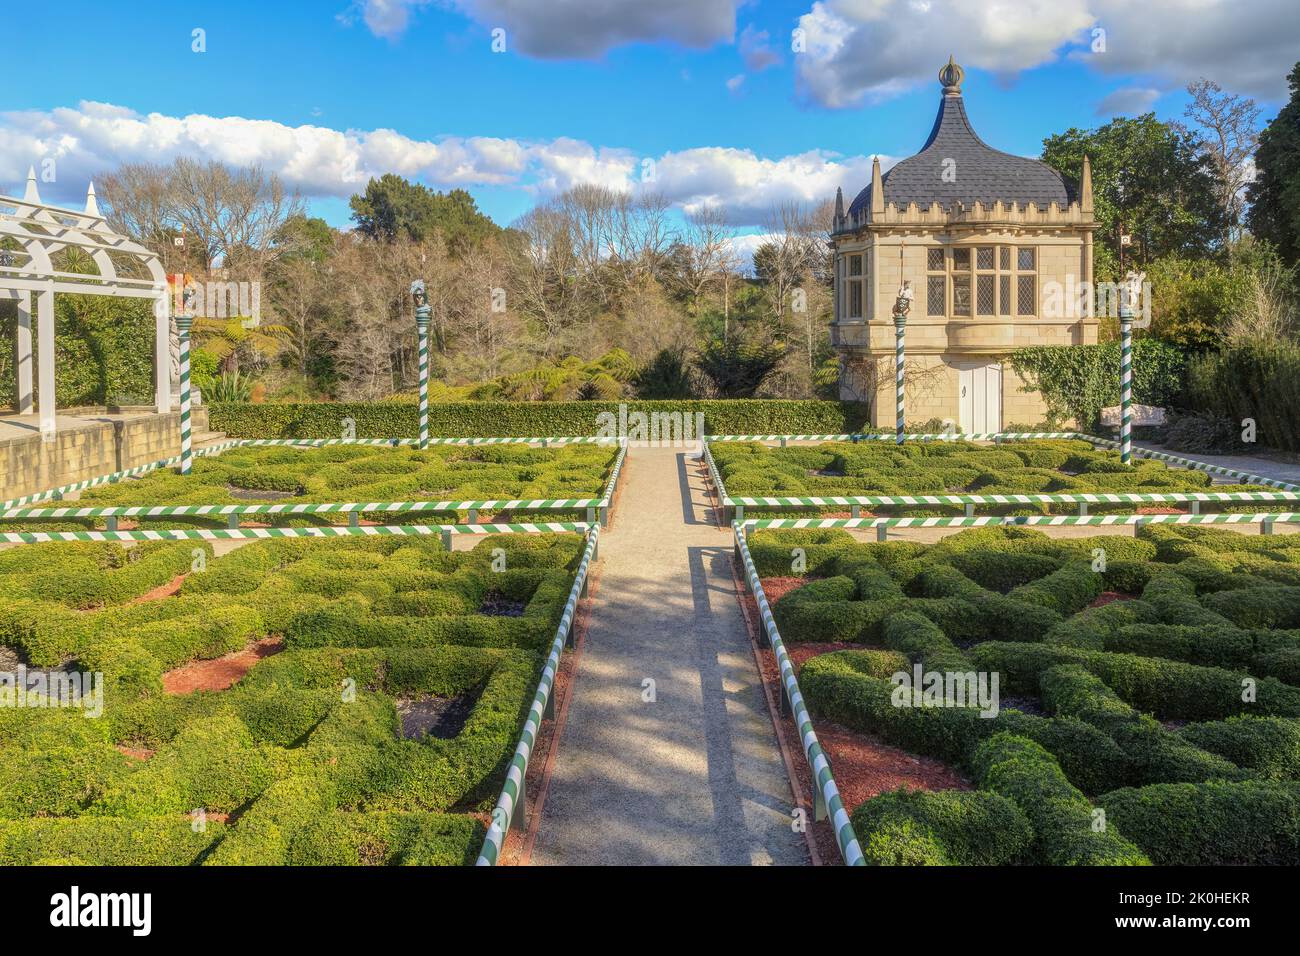 The Tudor Garden, a recreation of an Elizabethan-era English garden in Hamilton Gardens, a park in Hamilton, New Zealand Stock Photo